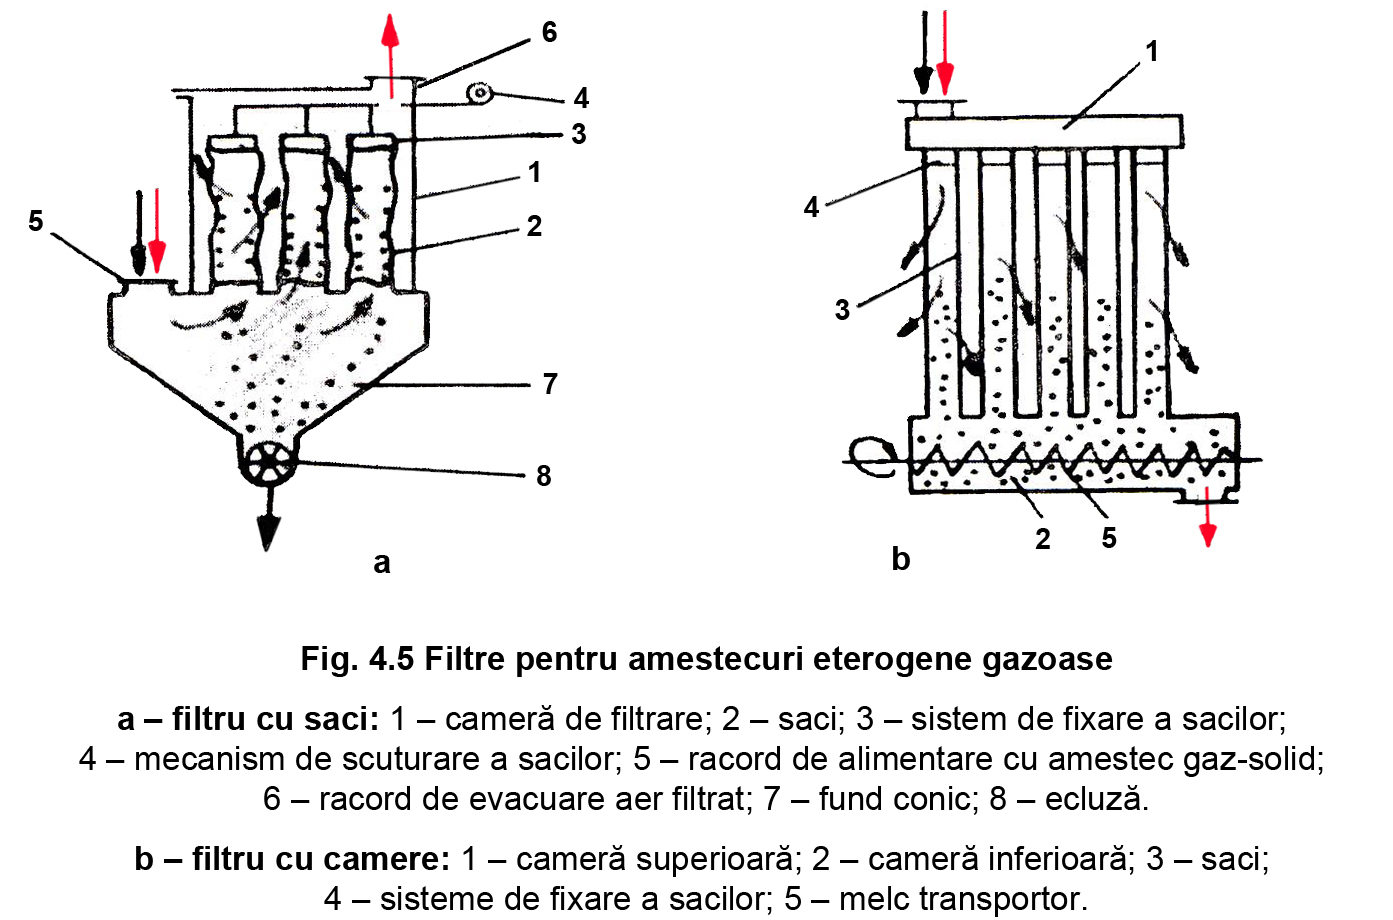 Fig. 4.5 Filtre pentru amestecuri eterogene gazoase